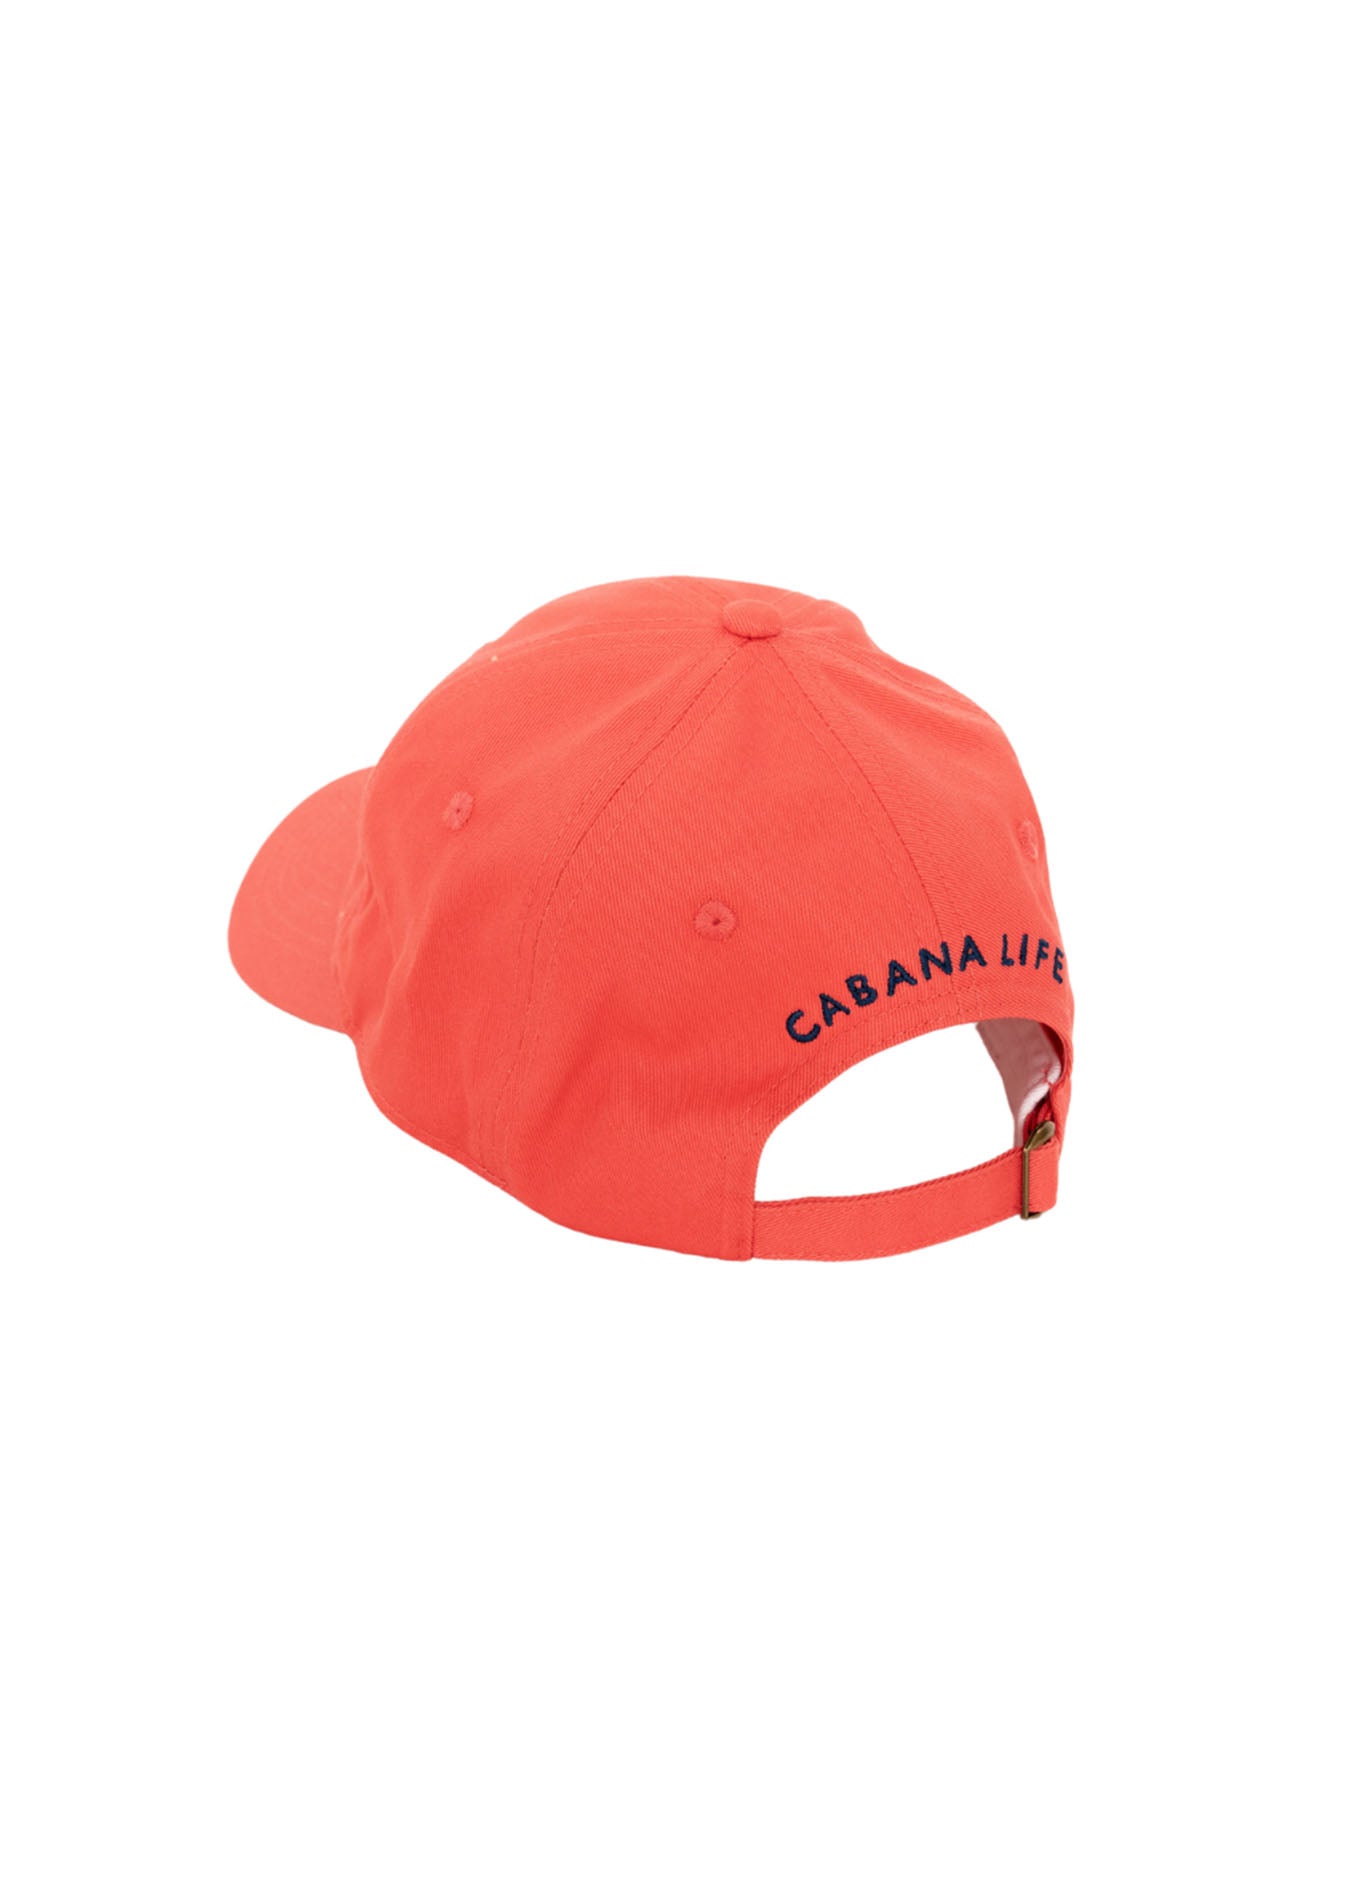 Back of Nantucket Red Cabana Life Baseball Hat on white background